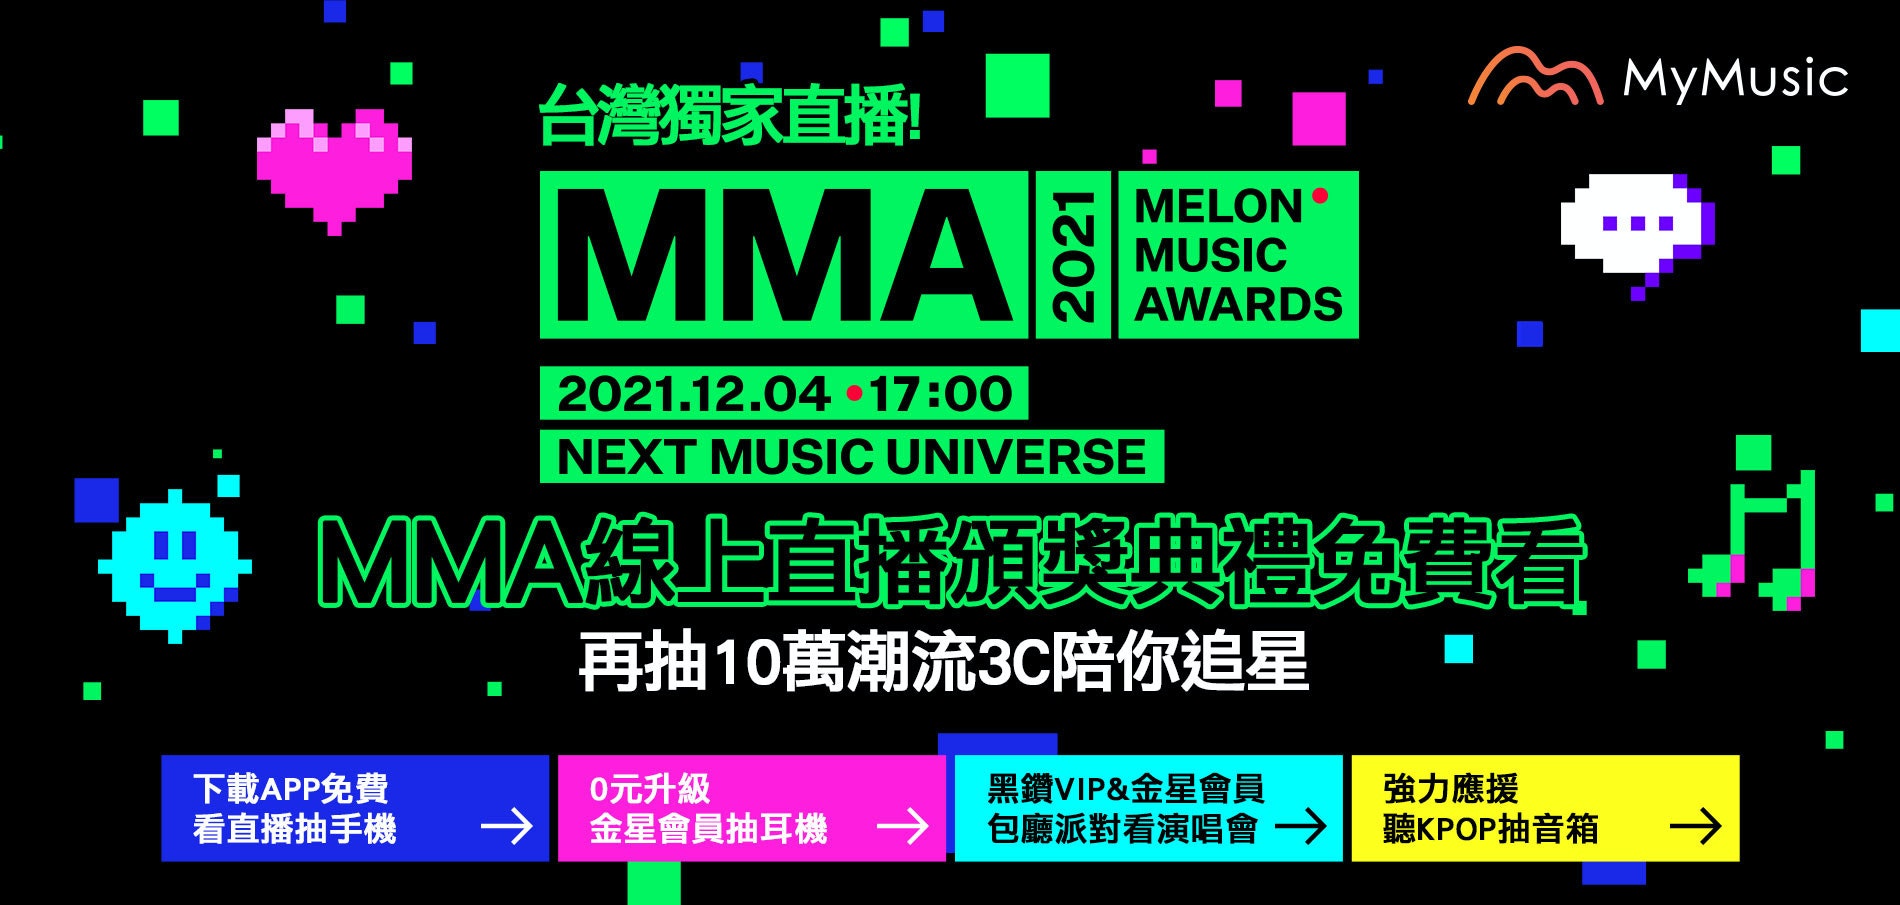 照片中提到了MyMusic、台灣獨家直播、MMА，跟流體網有關，包含了點、甜瓜音樂獎、我的音樂、音樂產業、Mnet亞洲音樂大獎